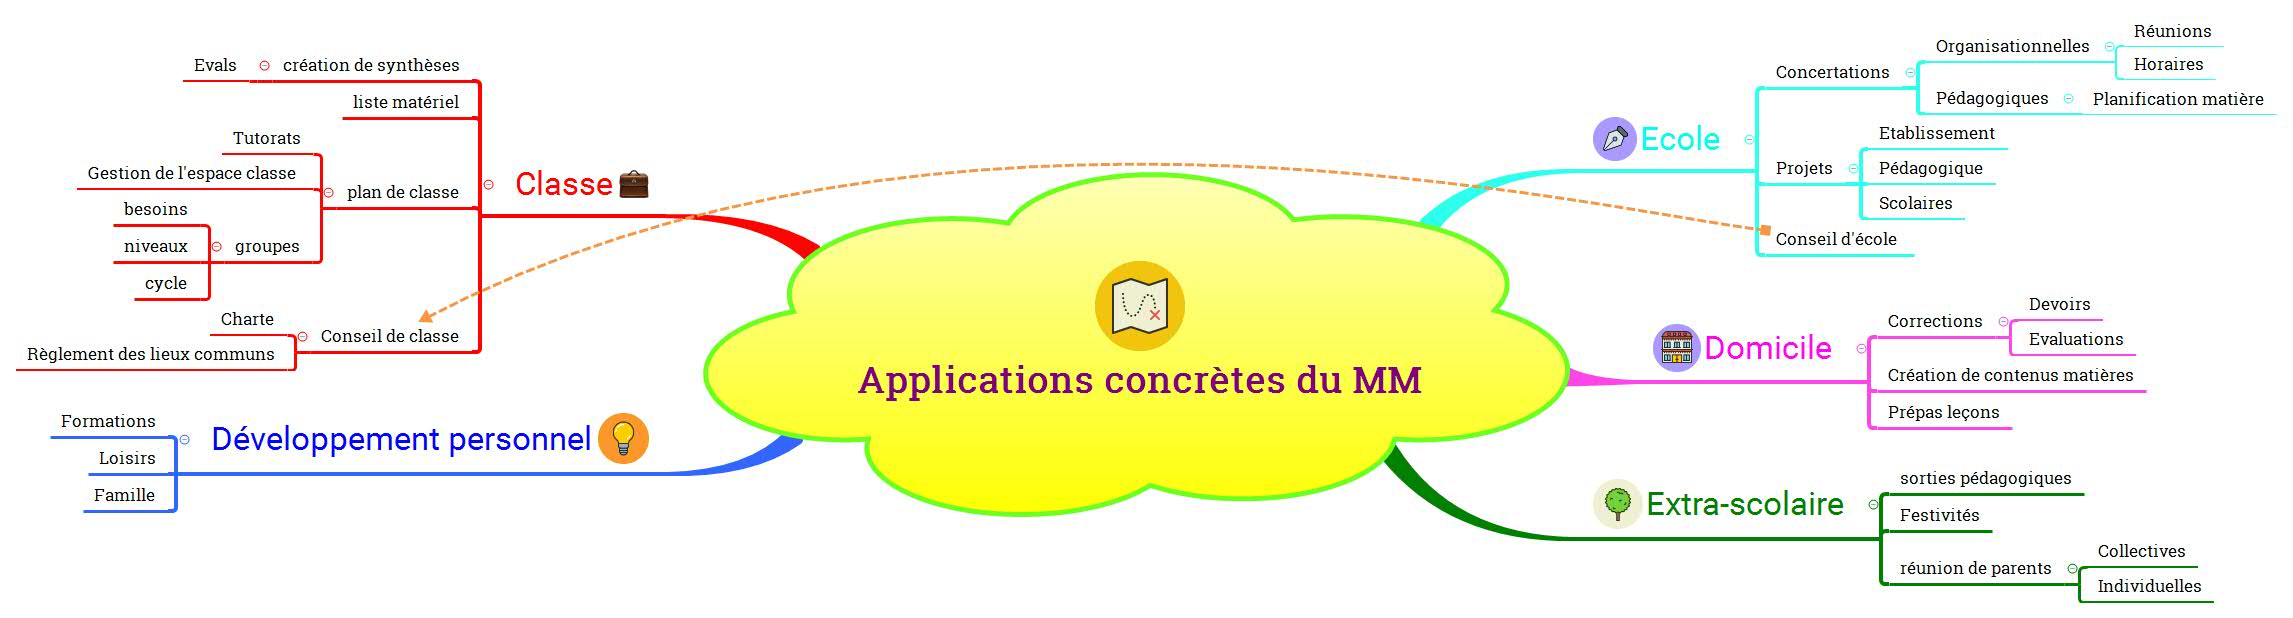 Applications concrètes du MM